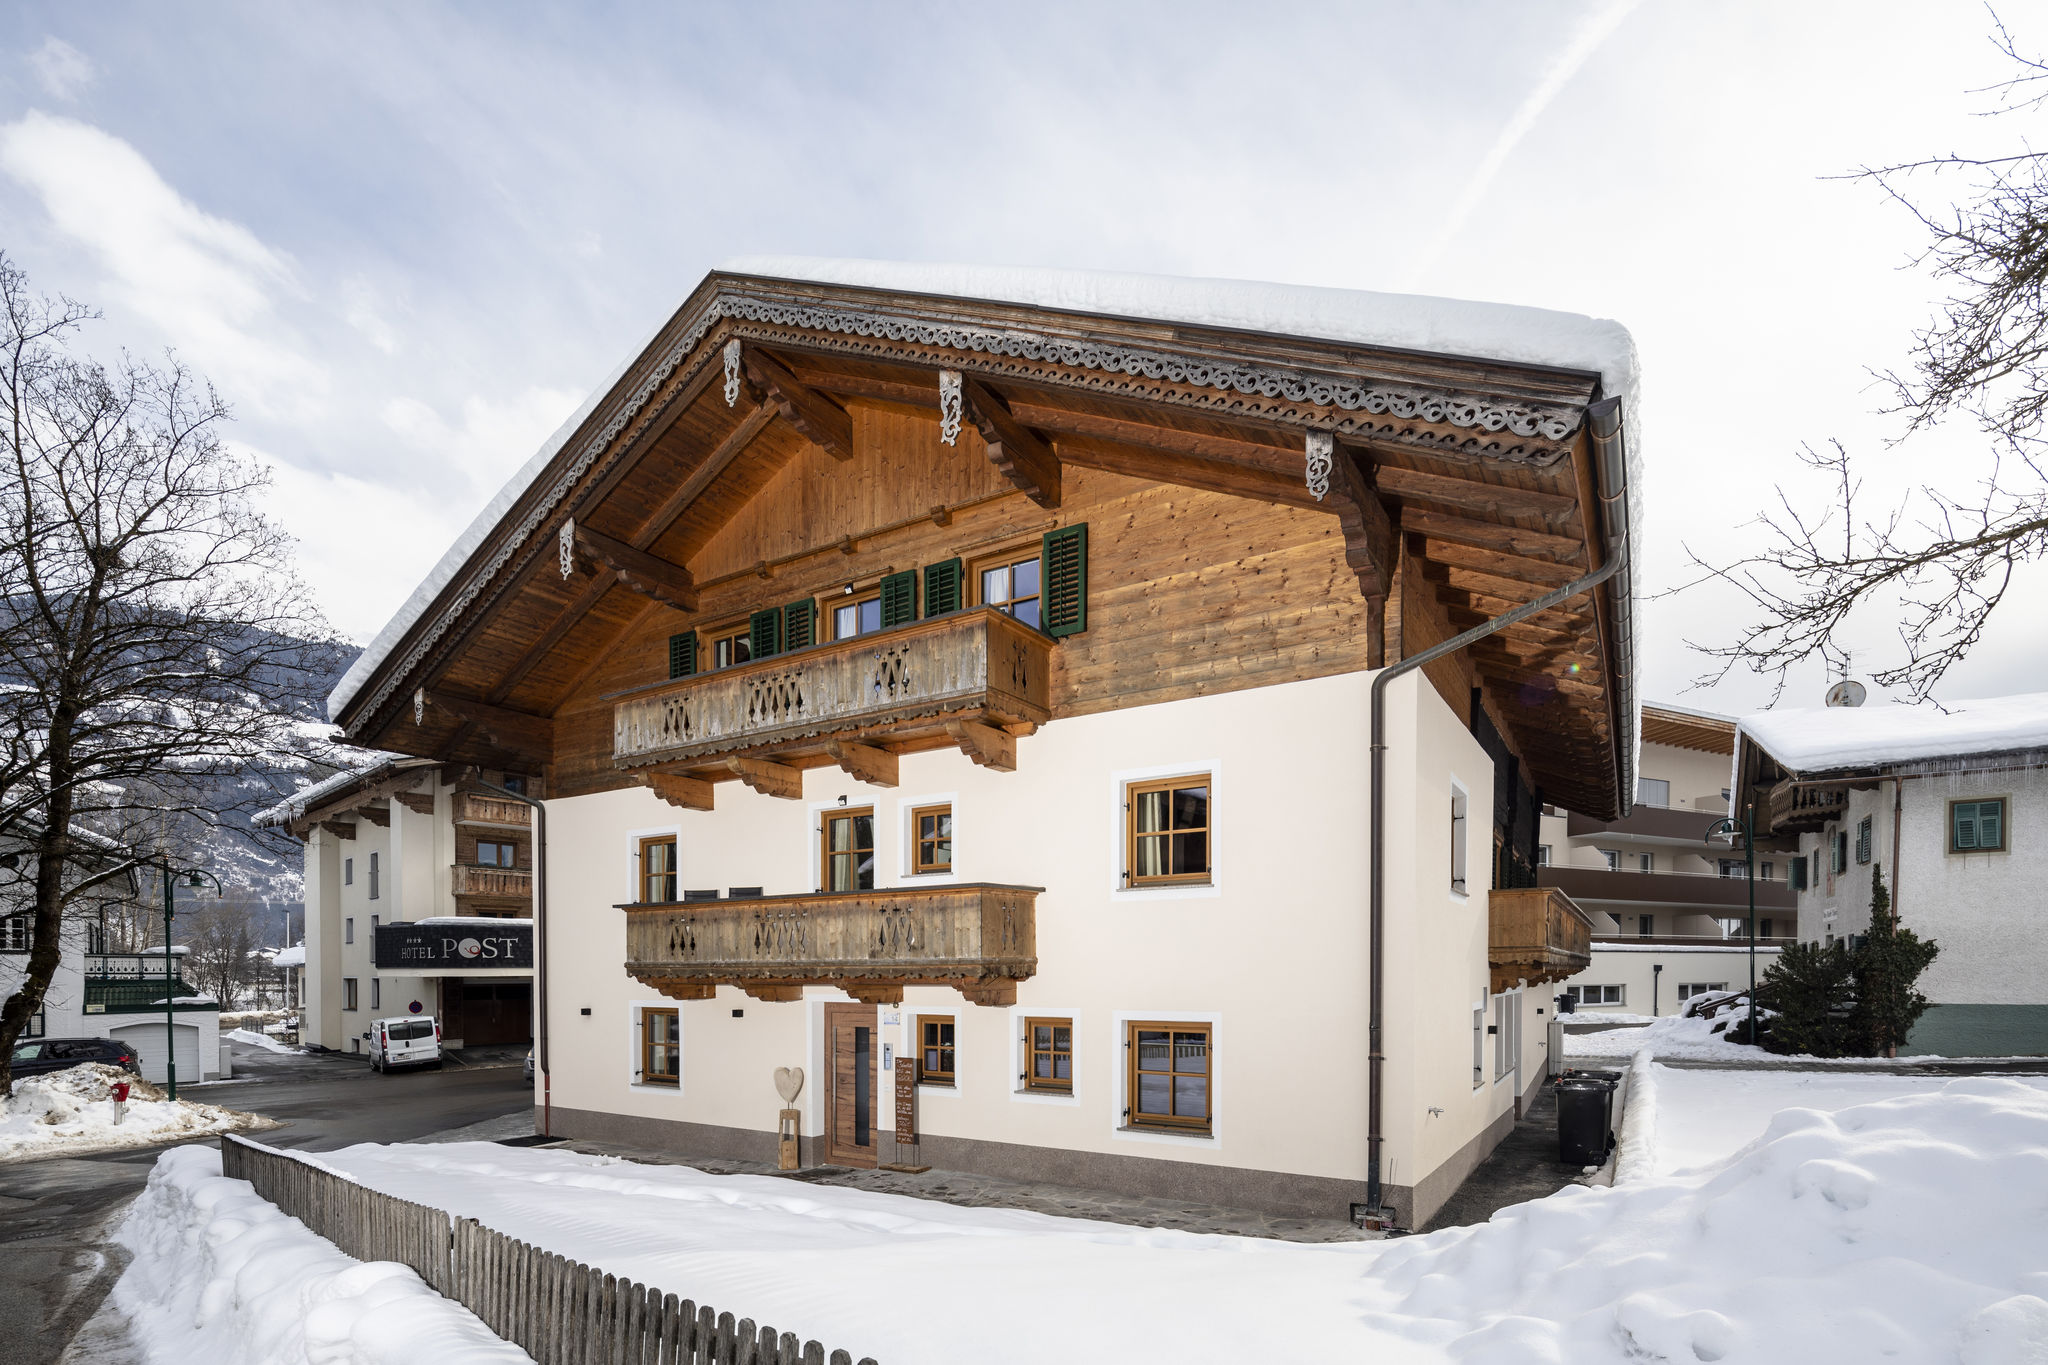 Scenic Apartment in Kaltenbach in Zillertal near Ski Area